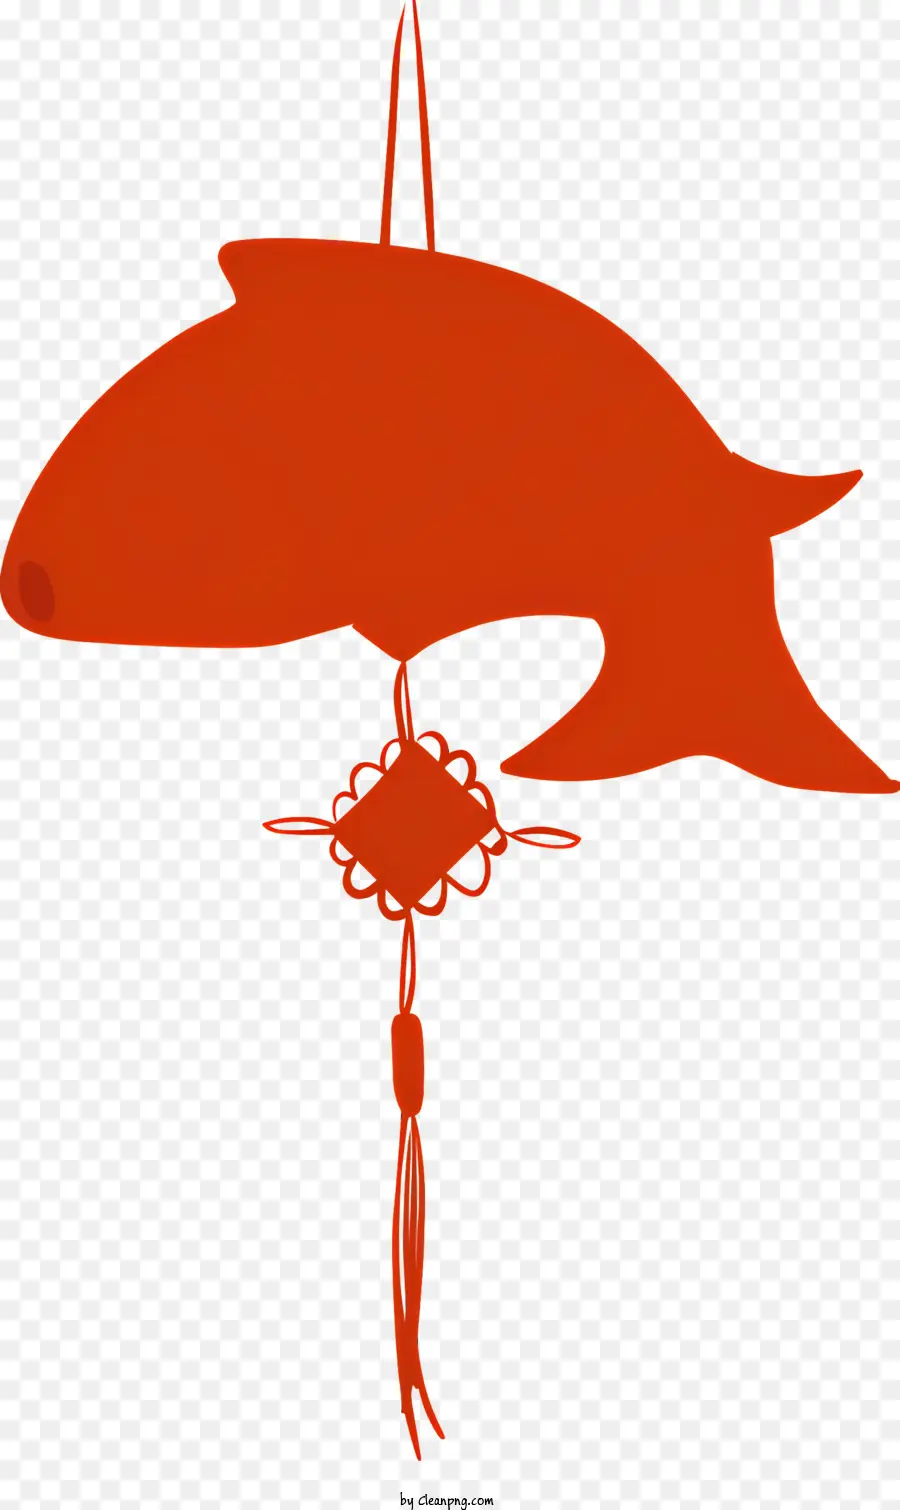 icona pesce rosso golden net palla rossa simbolo cinese - Attraente pesce rosso con rete dorata che simboleggia la prosperità